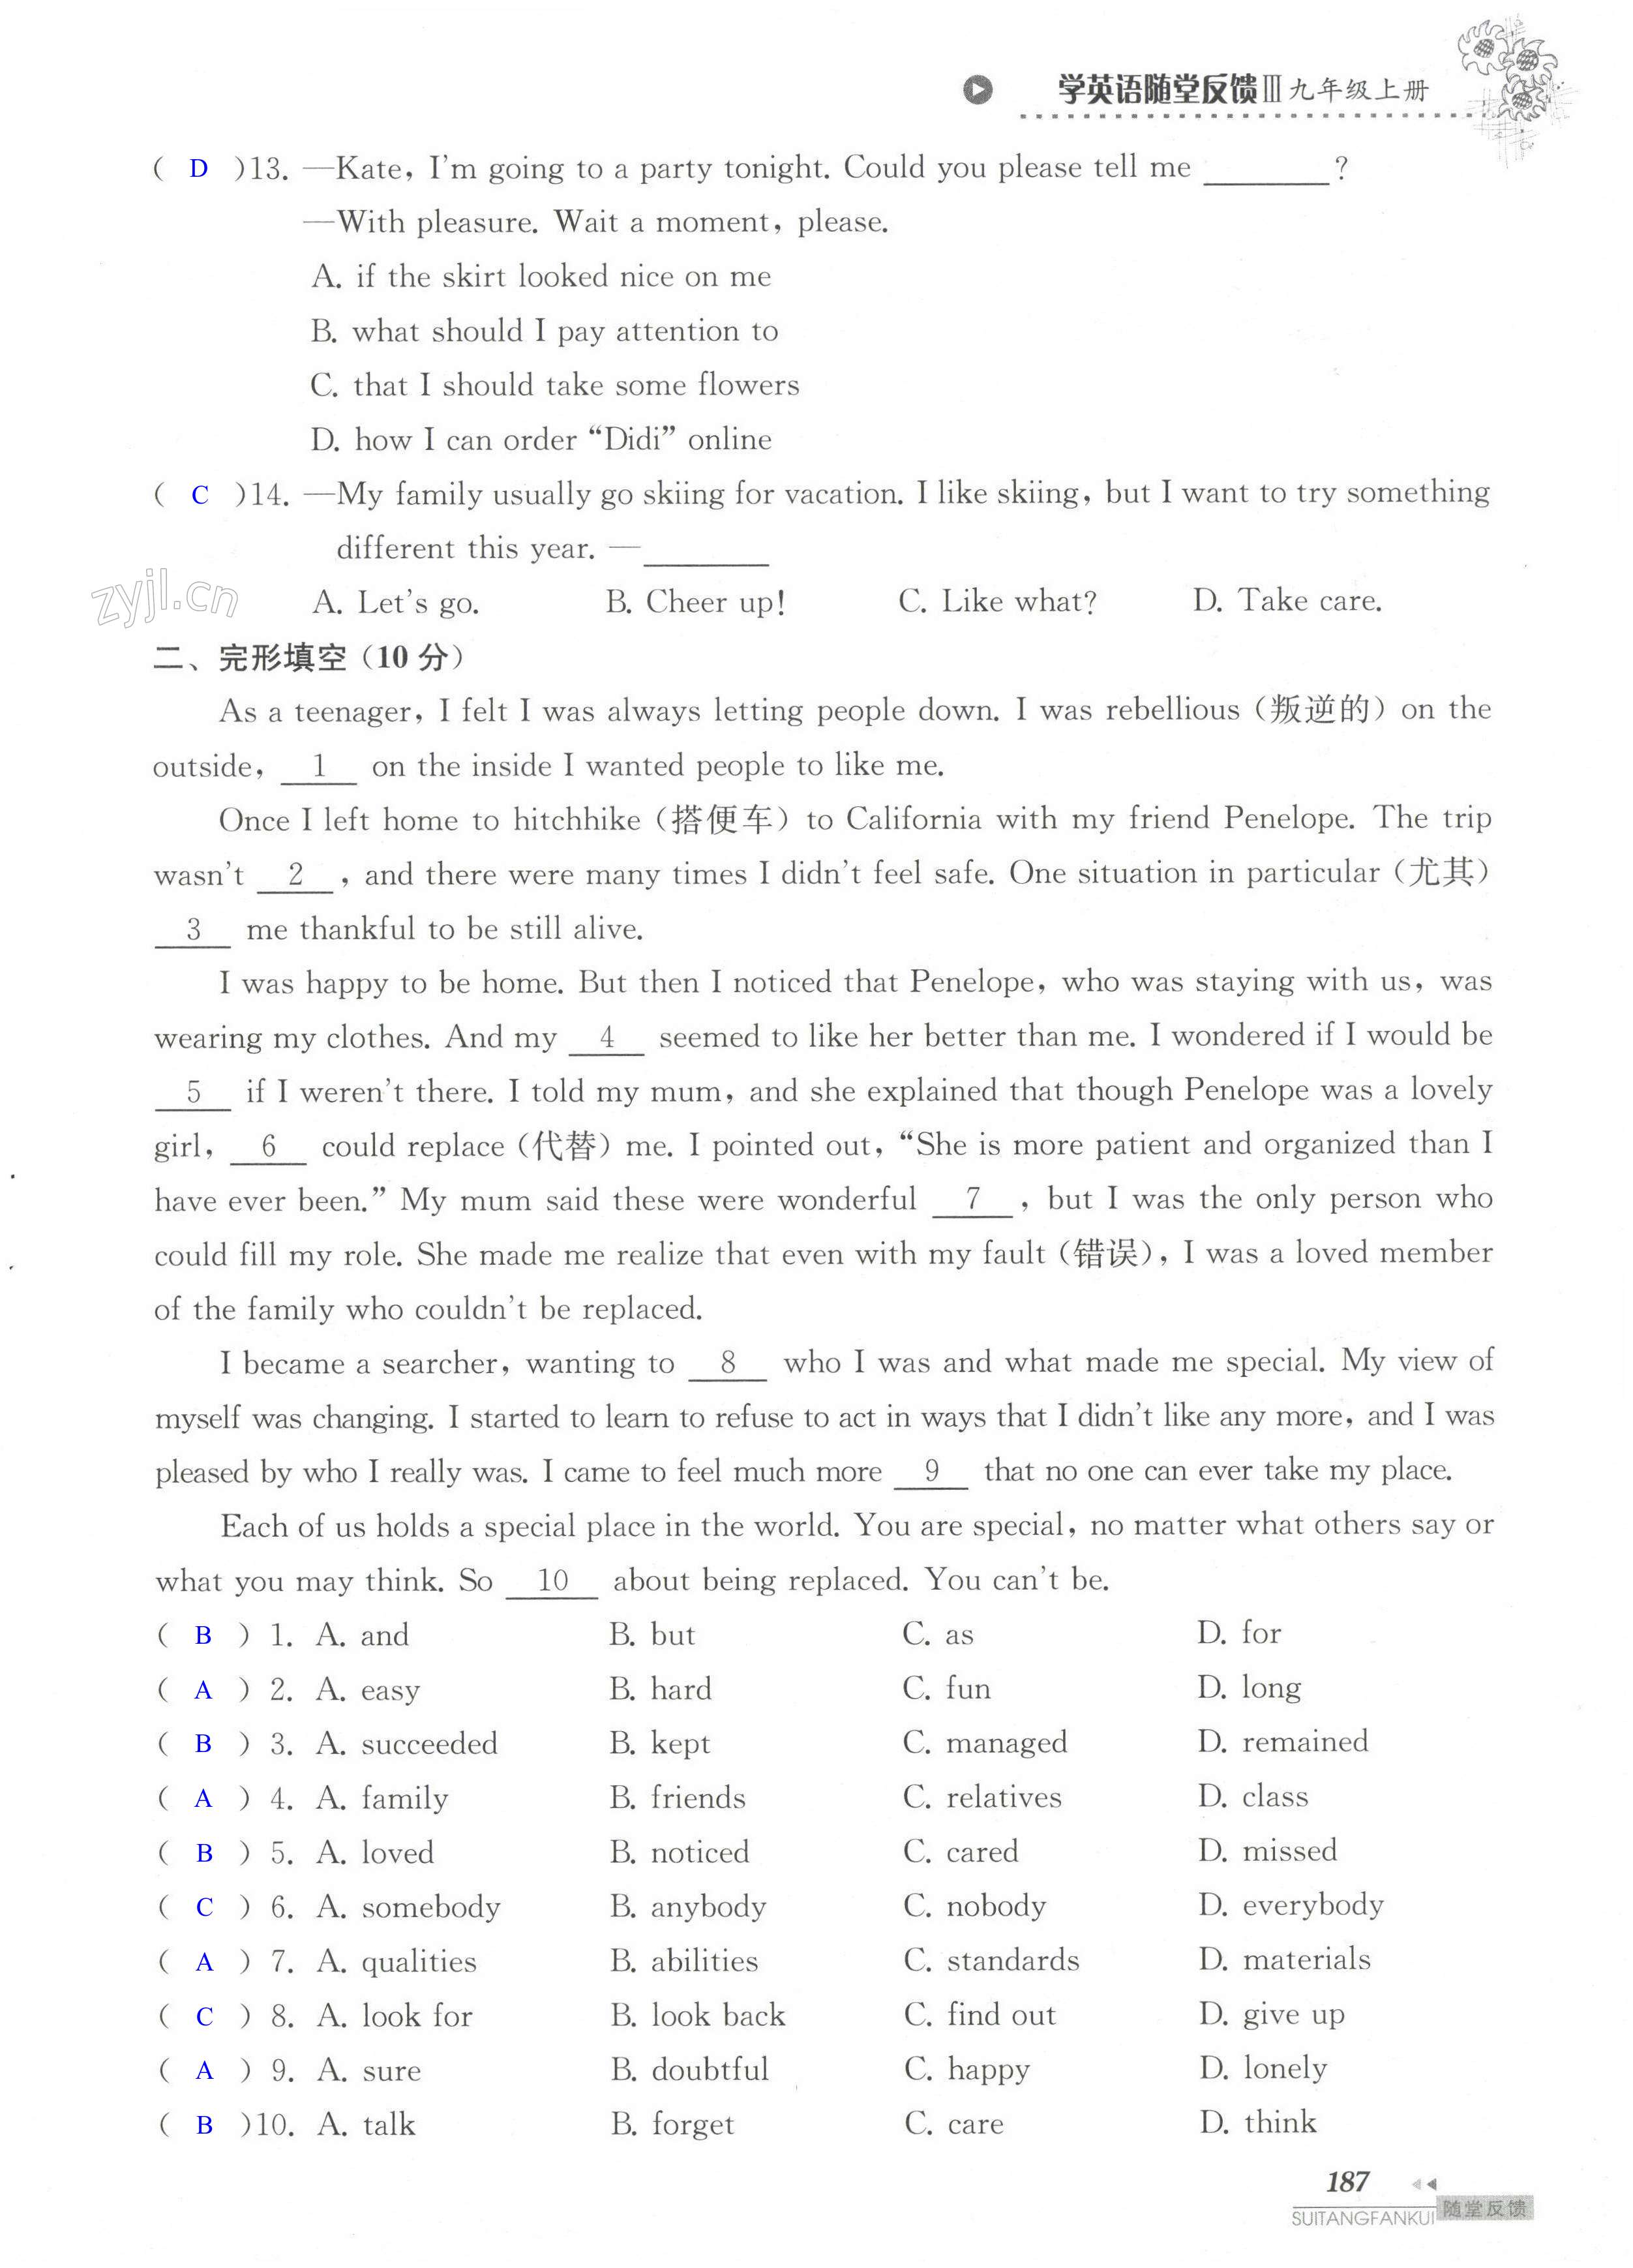 单元综合测试卷 Test for Unit 5 of 9A - 第187页